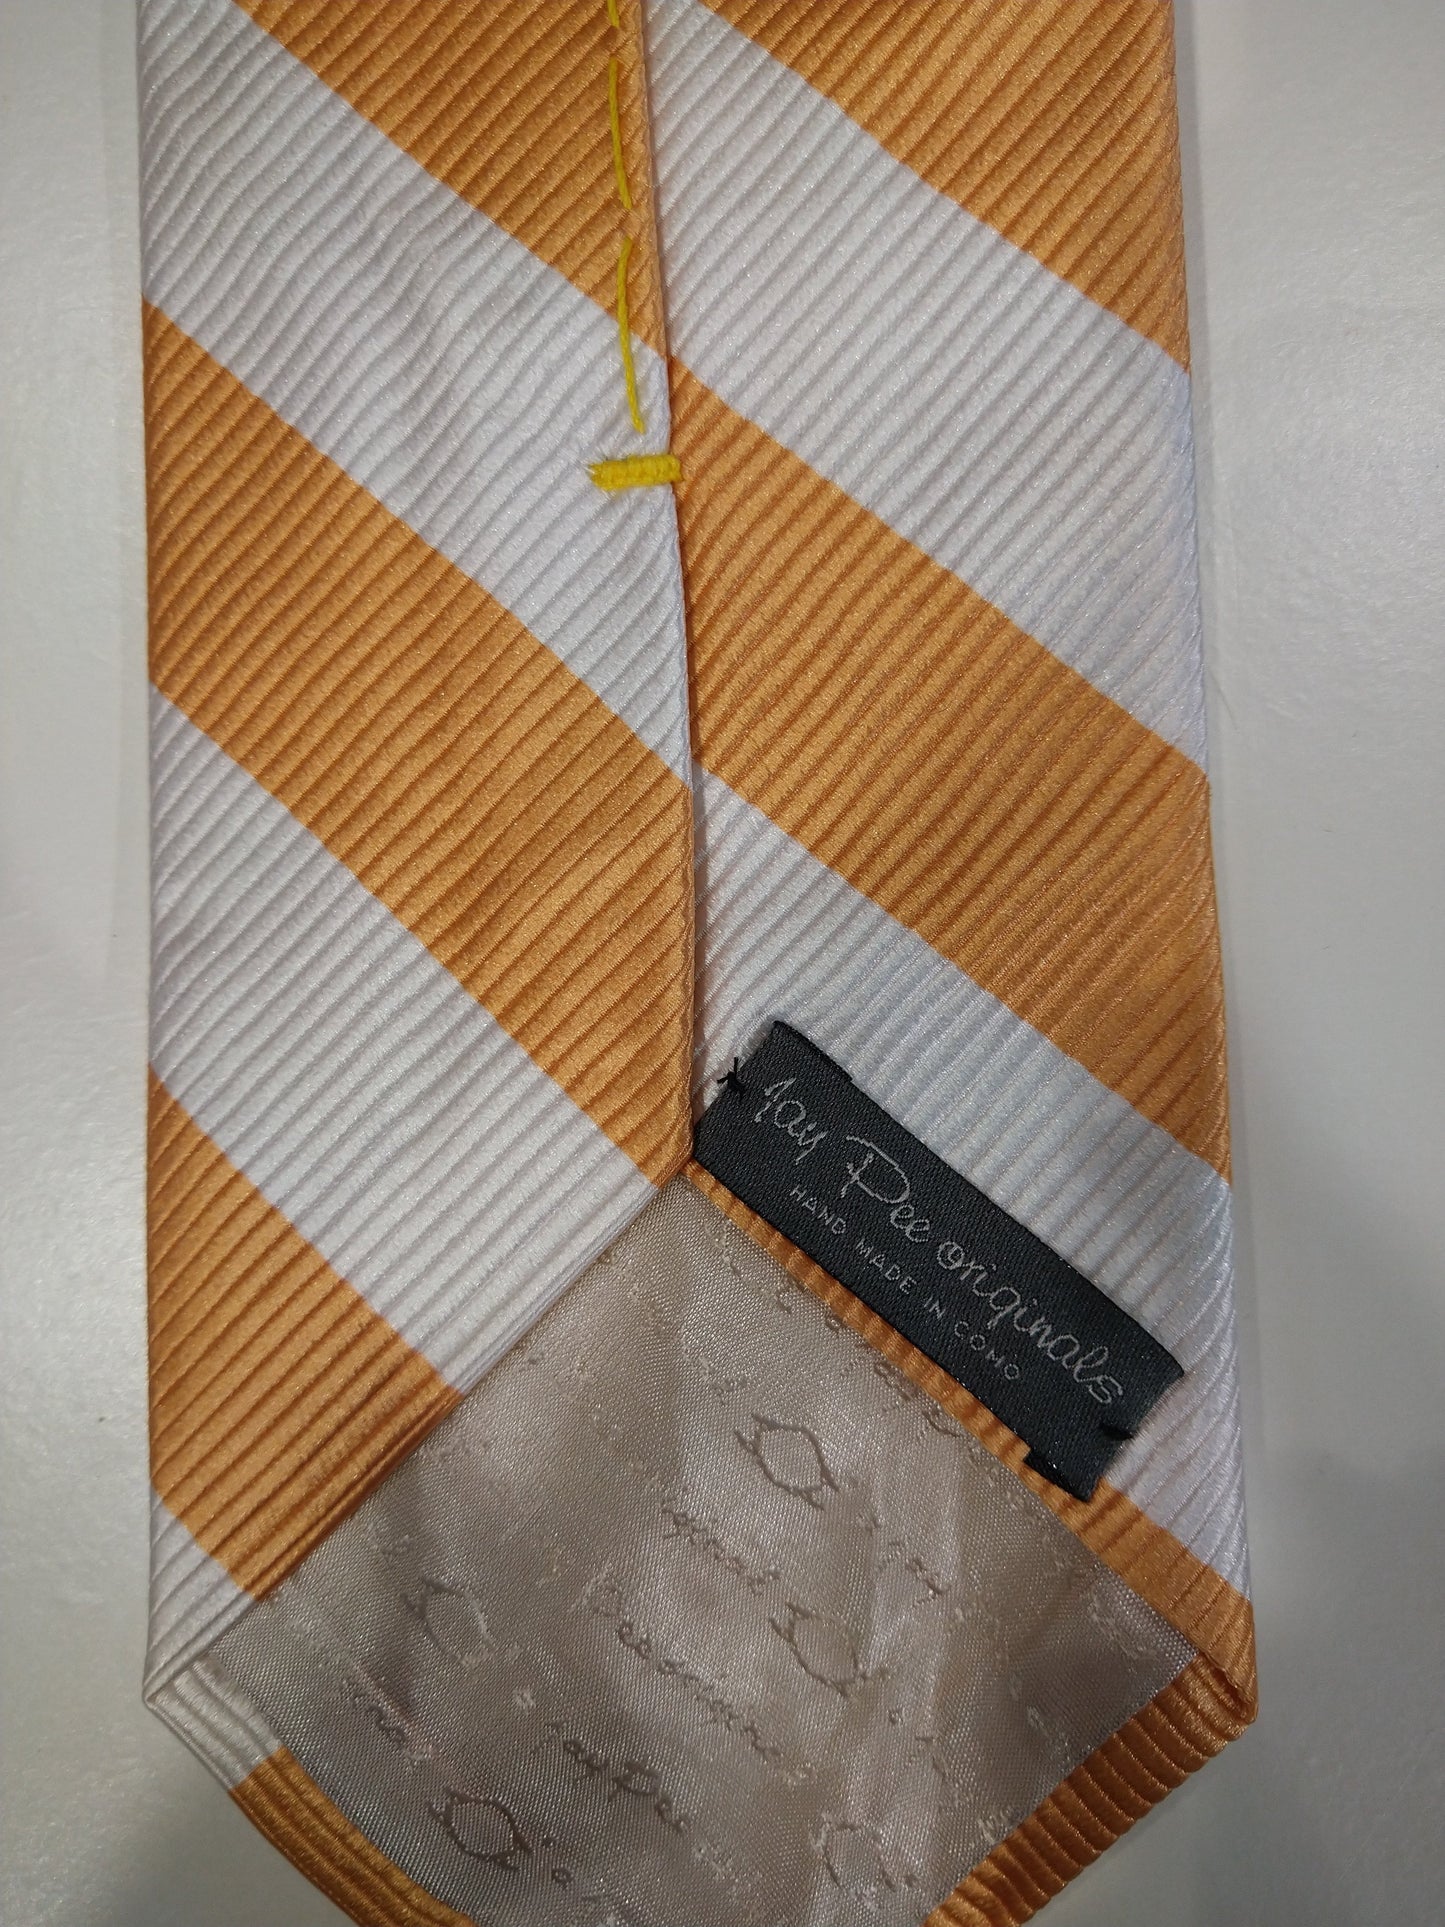 Jay Pee Original hand made in Como zijde stropdas. Oranje wit gestreept.